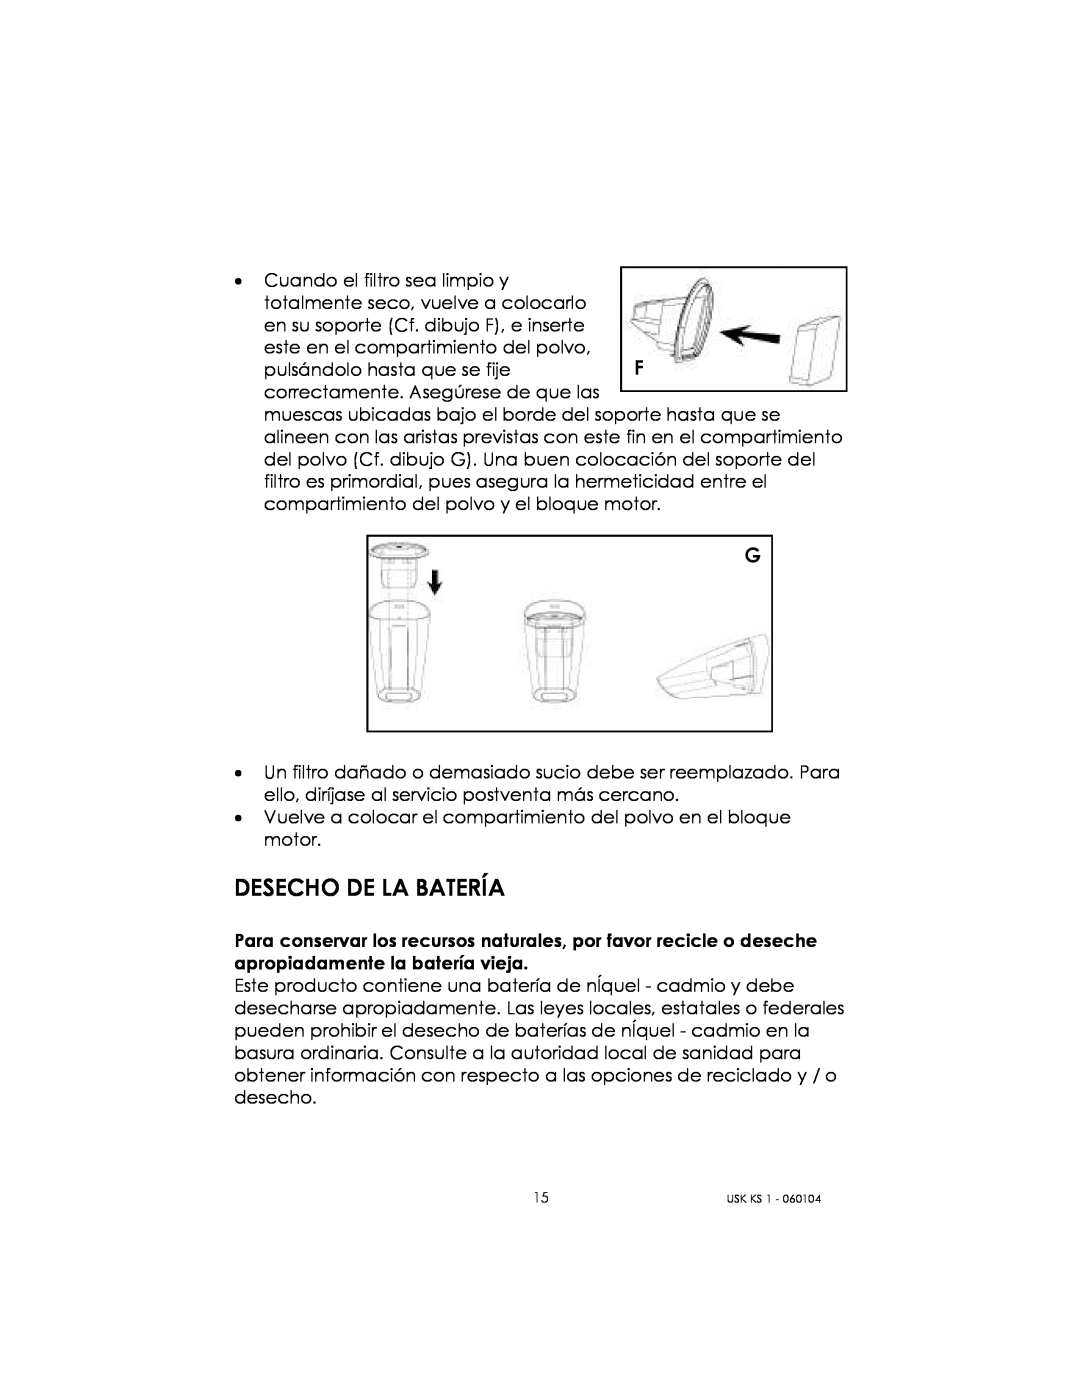 Kalorik USK KS 1 manual Desecho De La Batería 